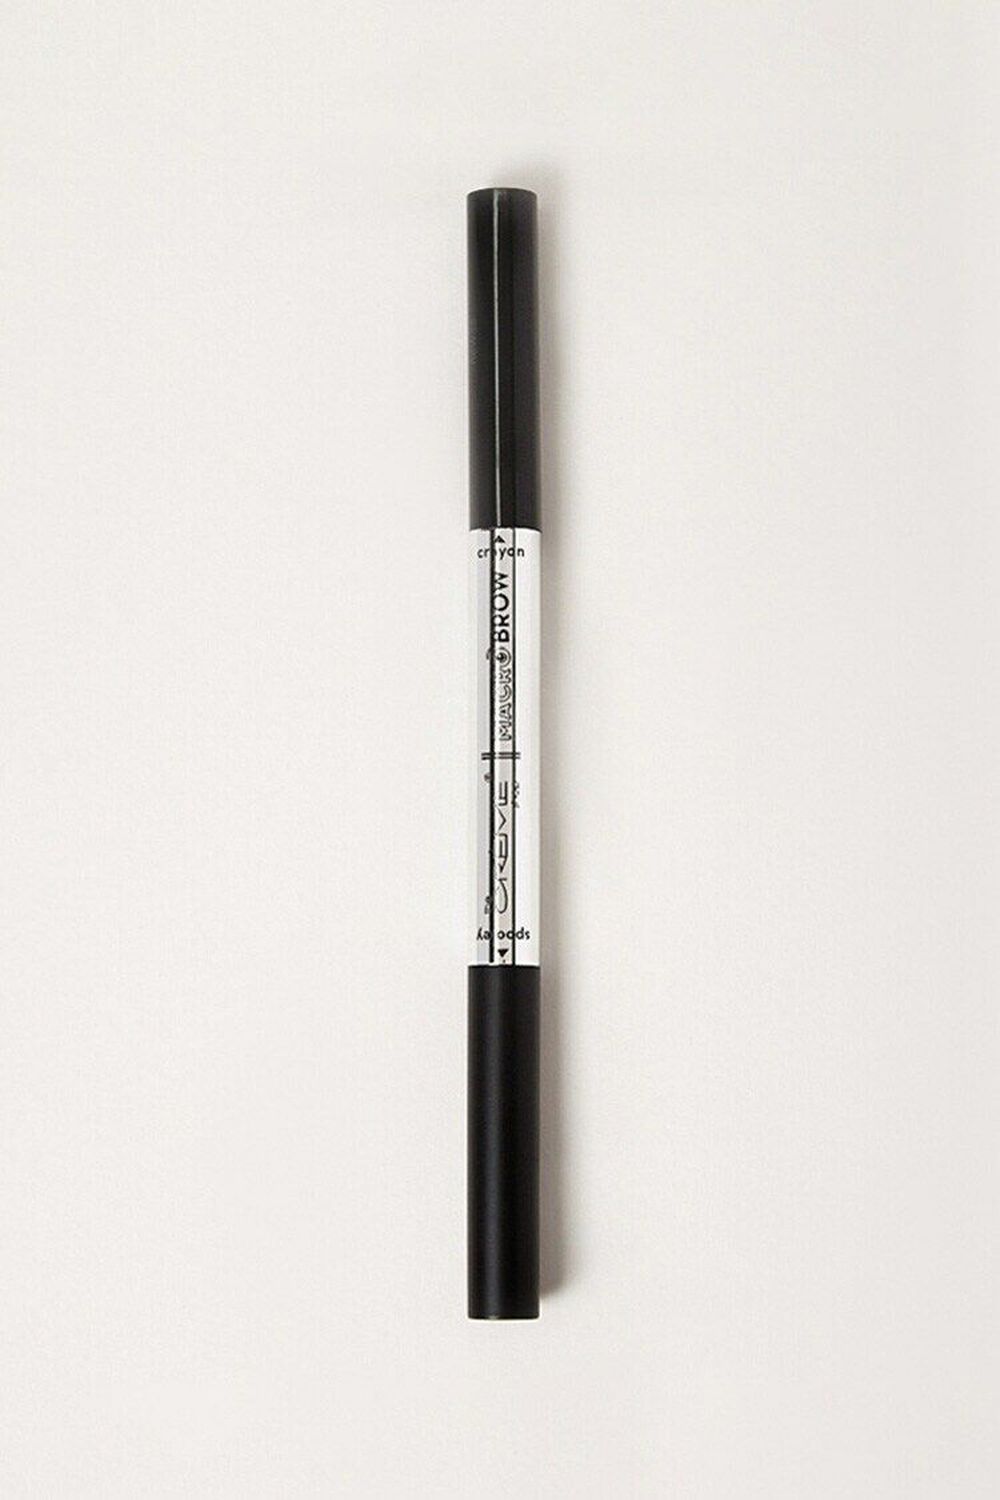 CARAMEL Macro Brow Pencil, image 1